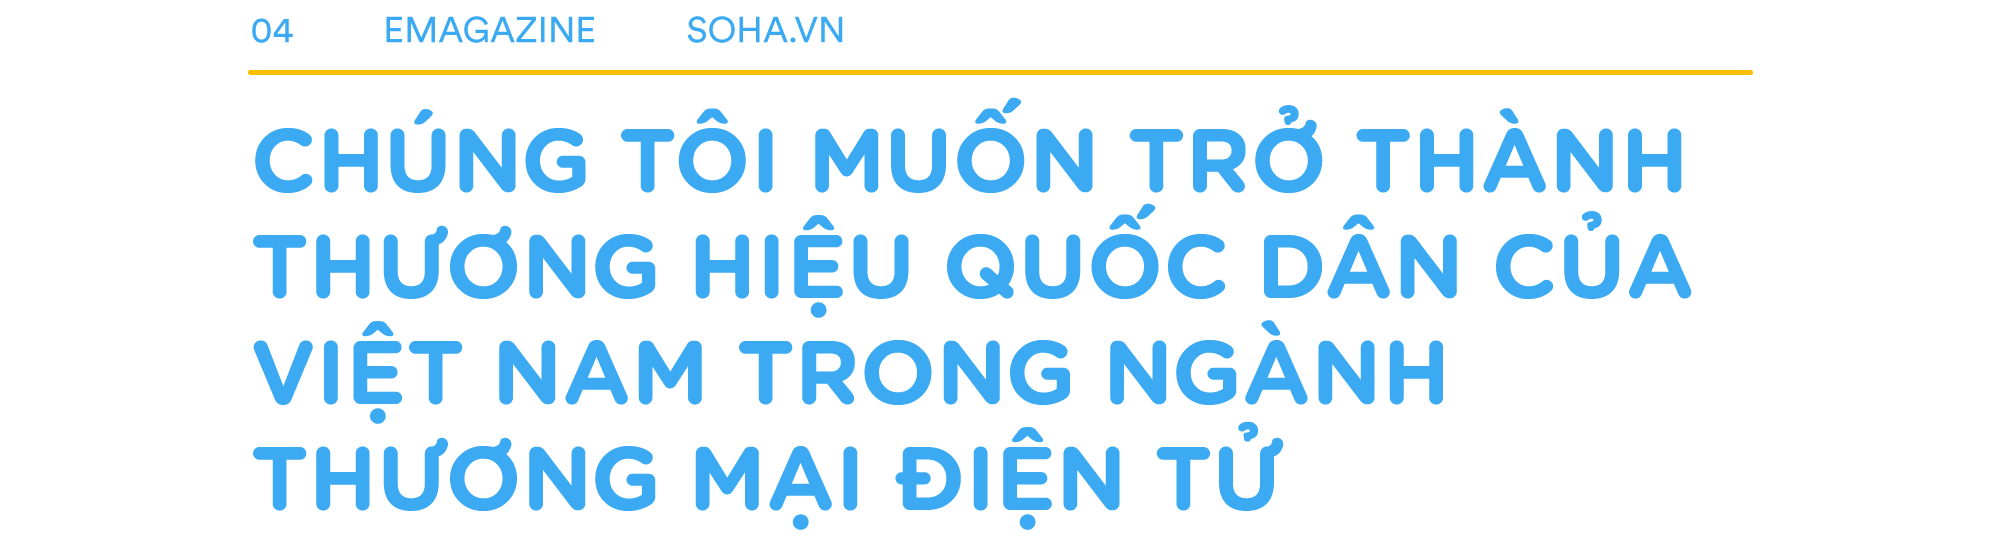 4 lần “chết hụt” của Tiki và lời cam kết: Bằng mọi giá, không để mất thị trường Việt Nam - Ảnh 7.